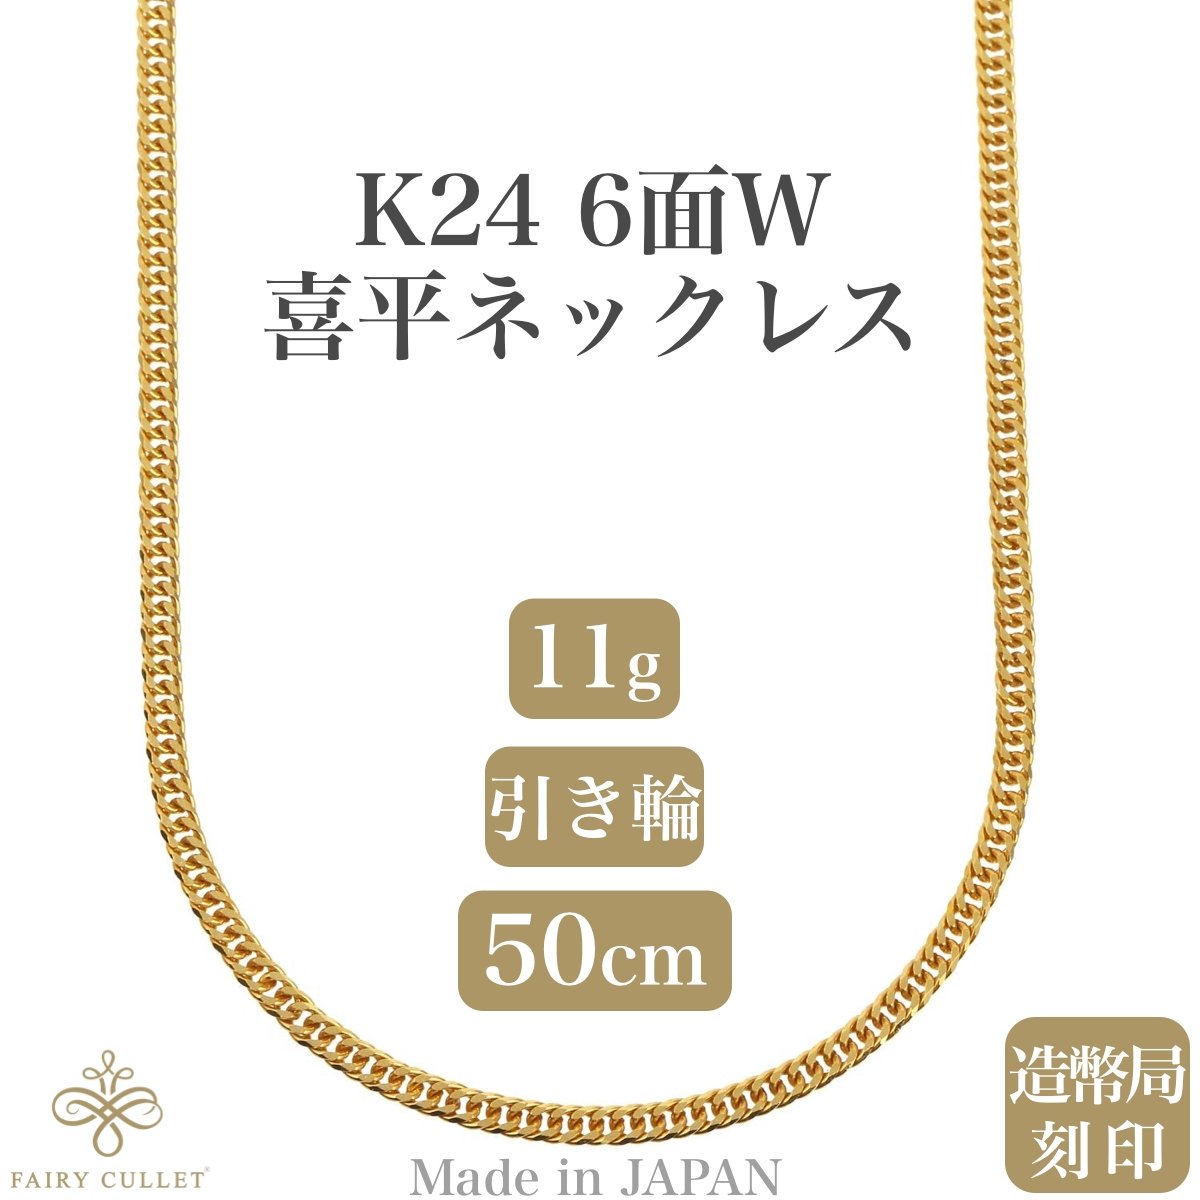 24金ネックレス K24 6面W喜平チェーン 日本製 純金 検定印 約11g 50cm 引き輪 - 喜平ジュエリーの専門店 FAIRY CULLET(フェアリーカレット)